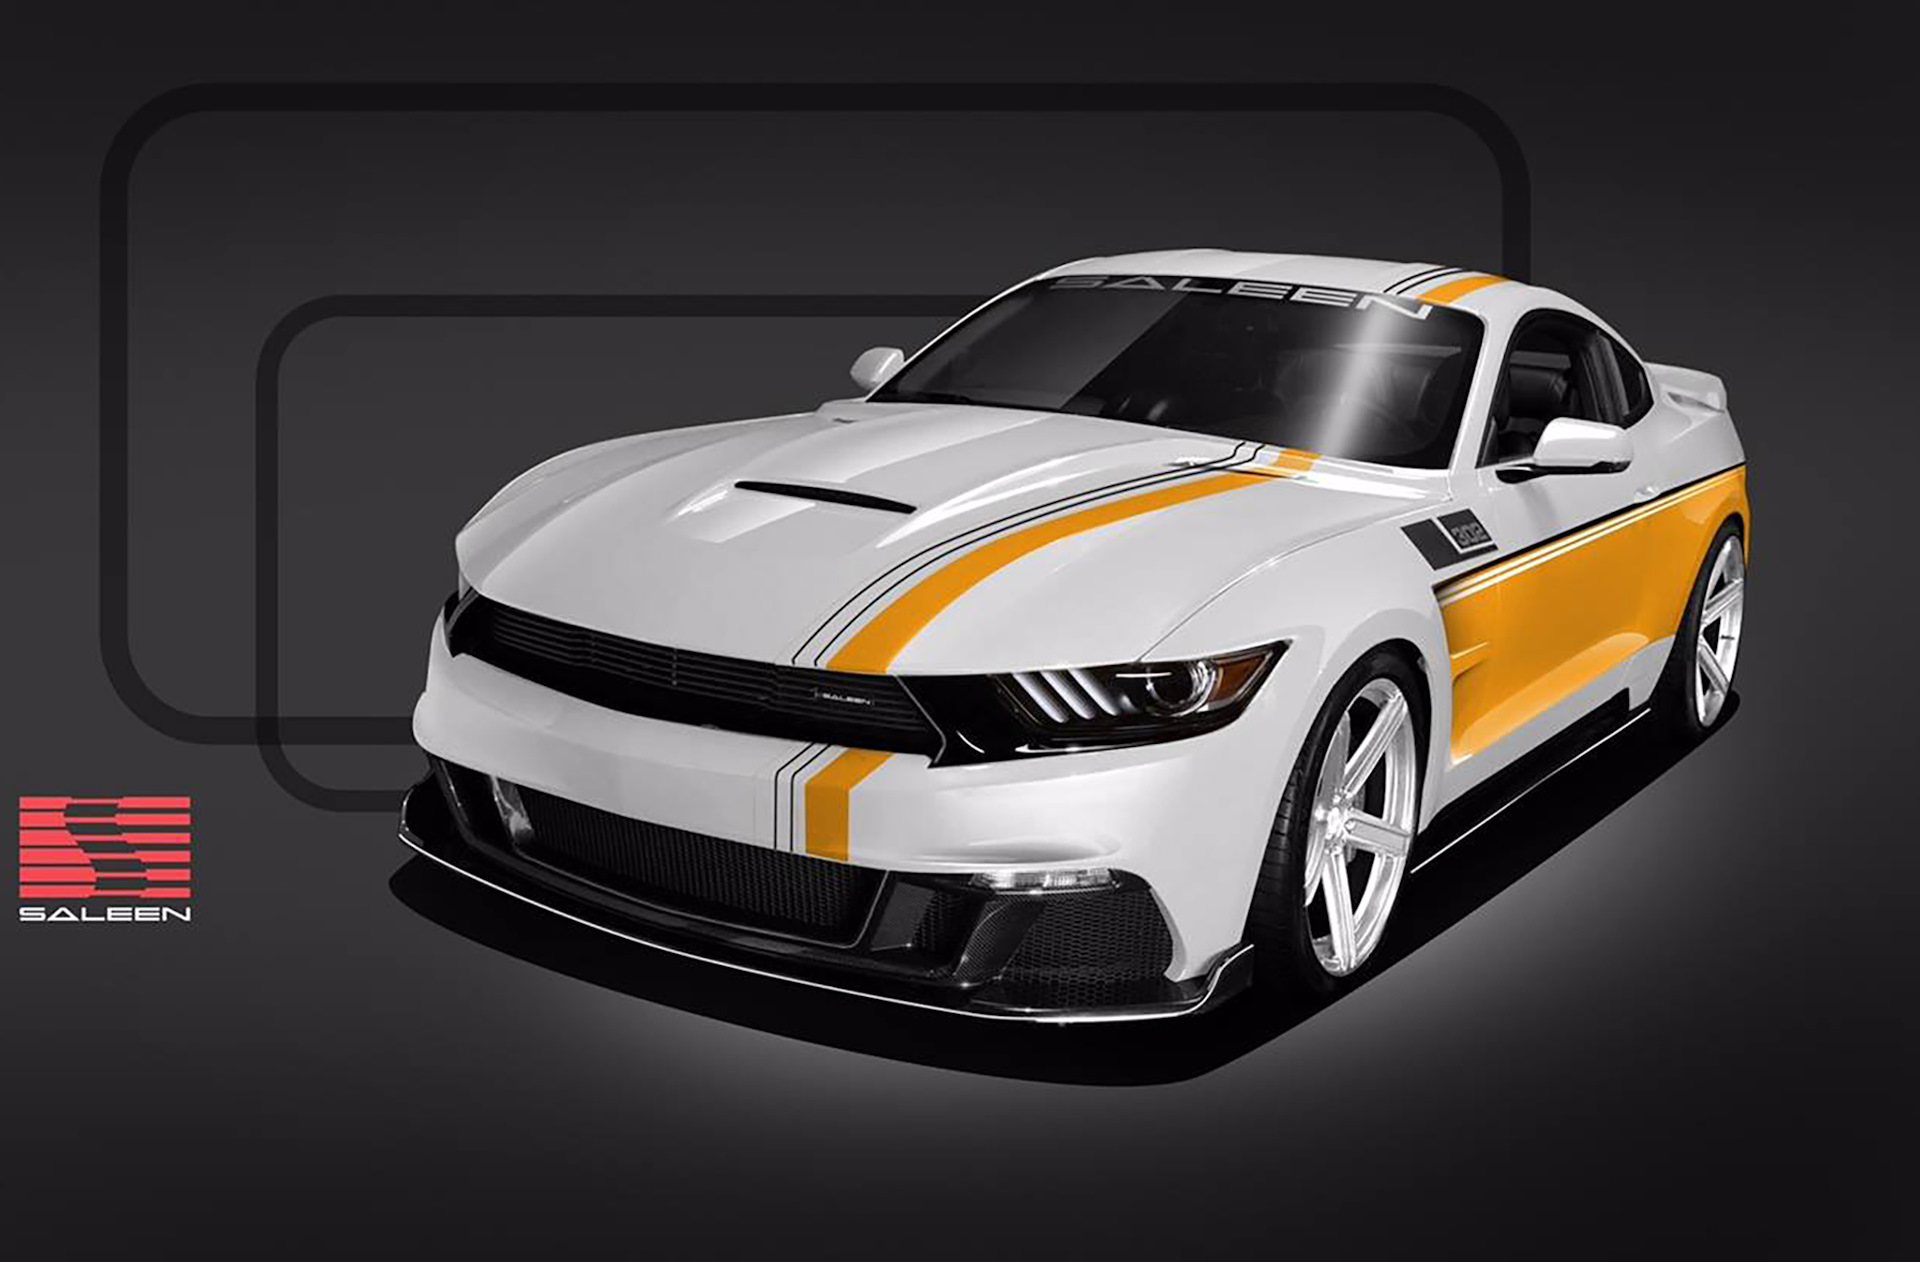 Однако, в прошлом году компания выпустила свою версию Mustang, а так же 7 ш...